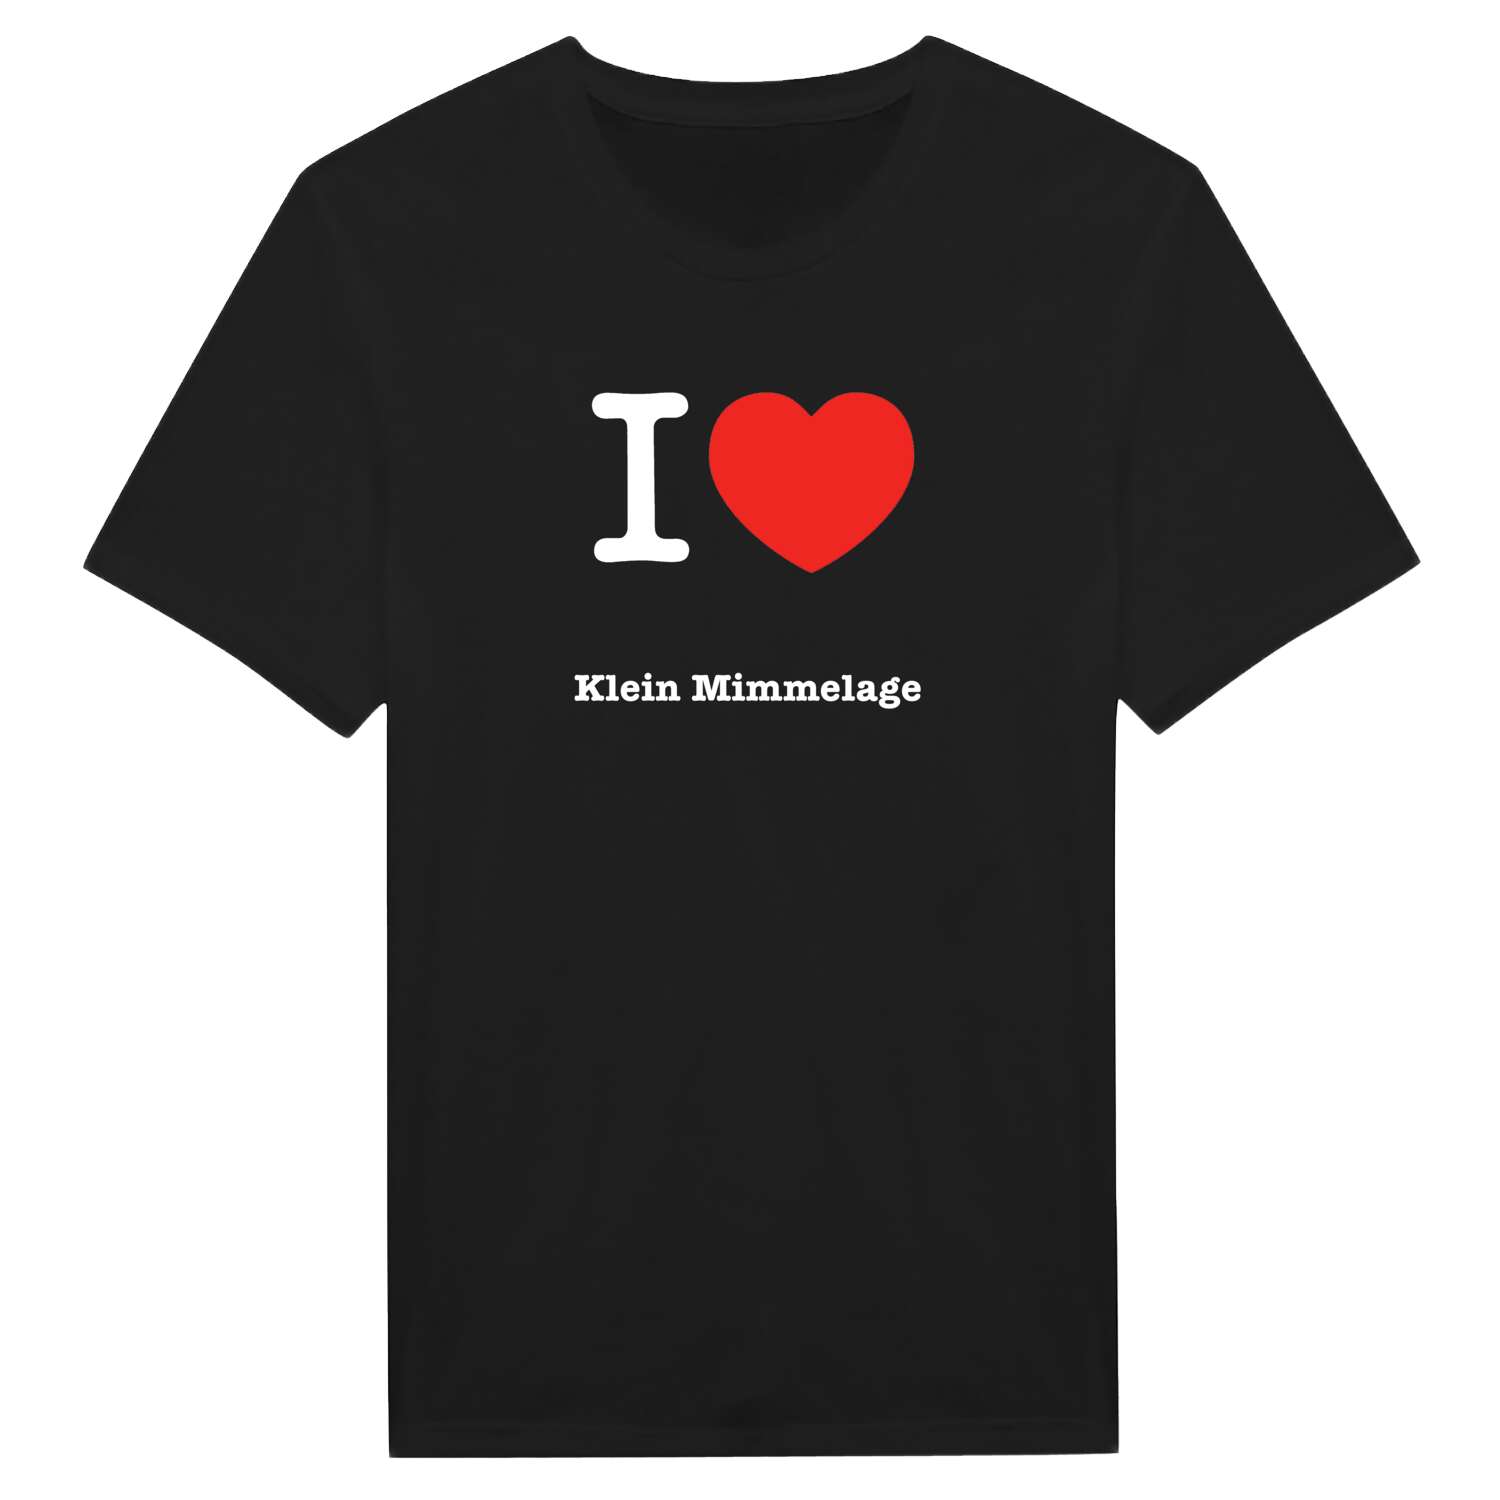 Klein Mimmelage T-Shirt »I love«